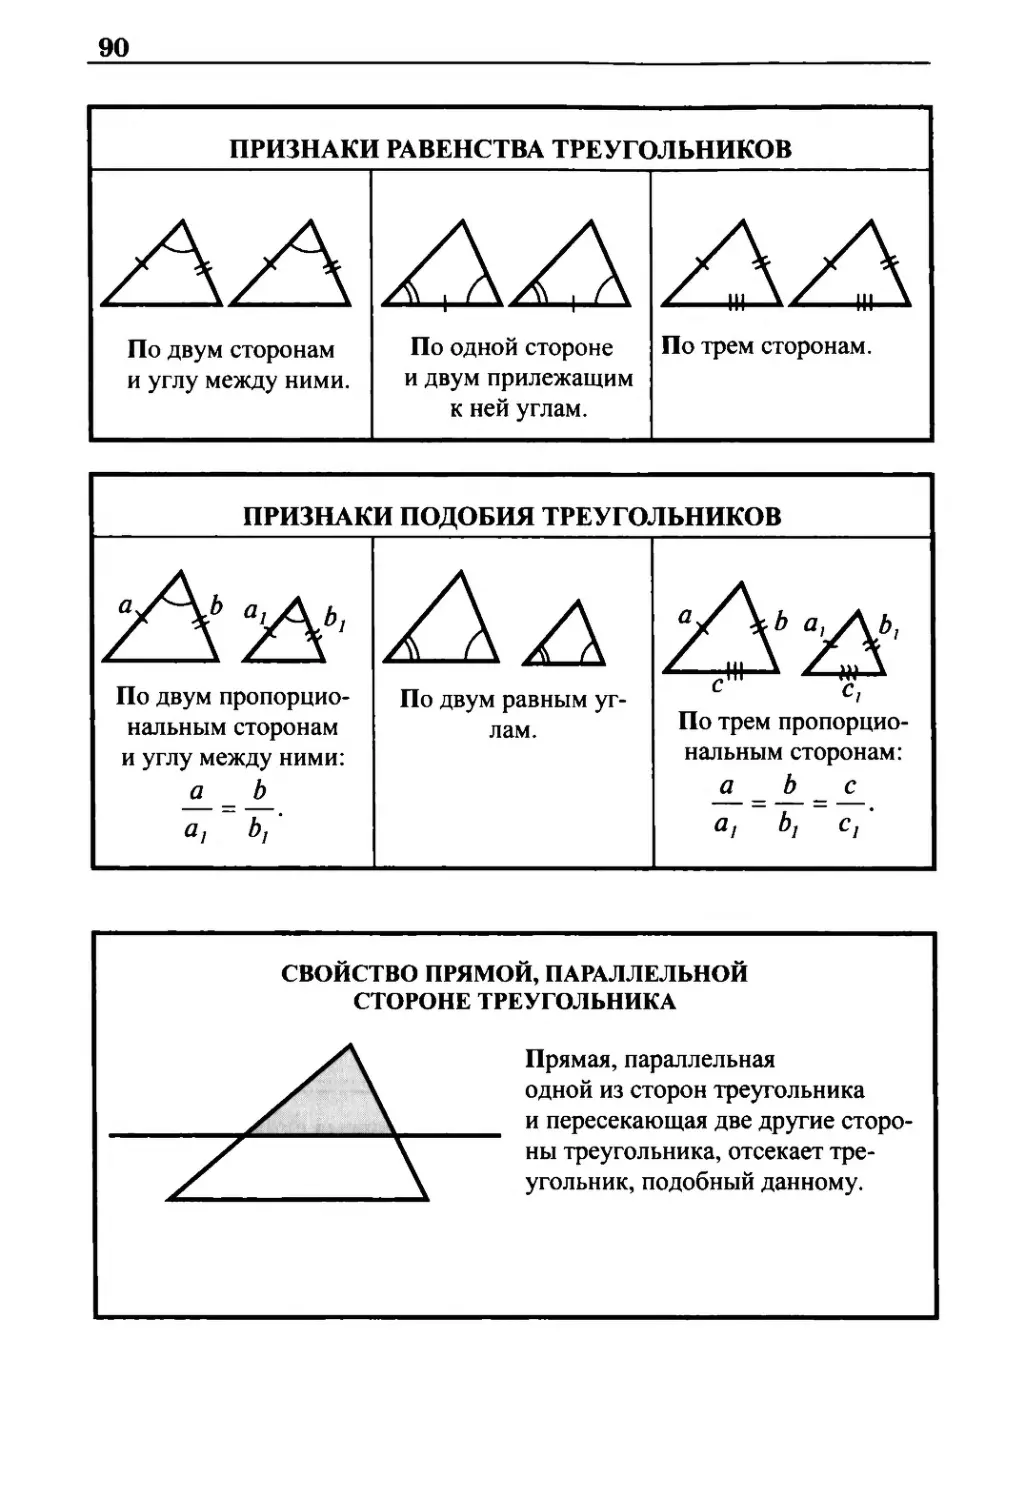 Признаки равенства треугольников
Признаки подобия треугольников
Свойство прямой, параллельной стороне треугольника